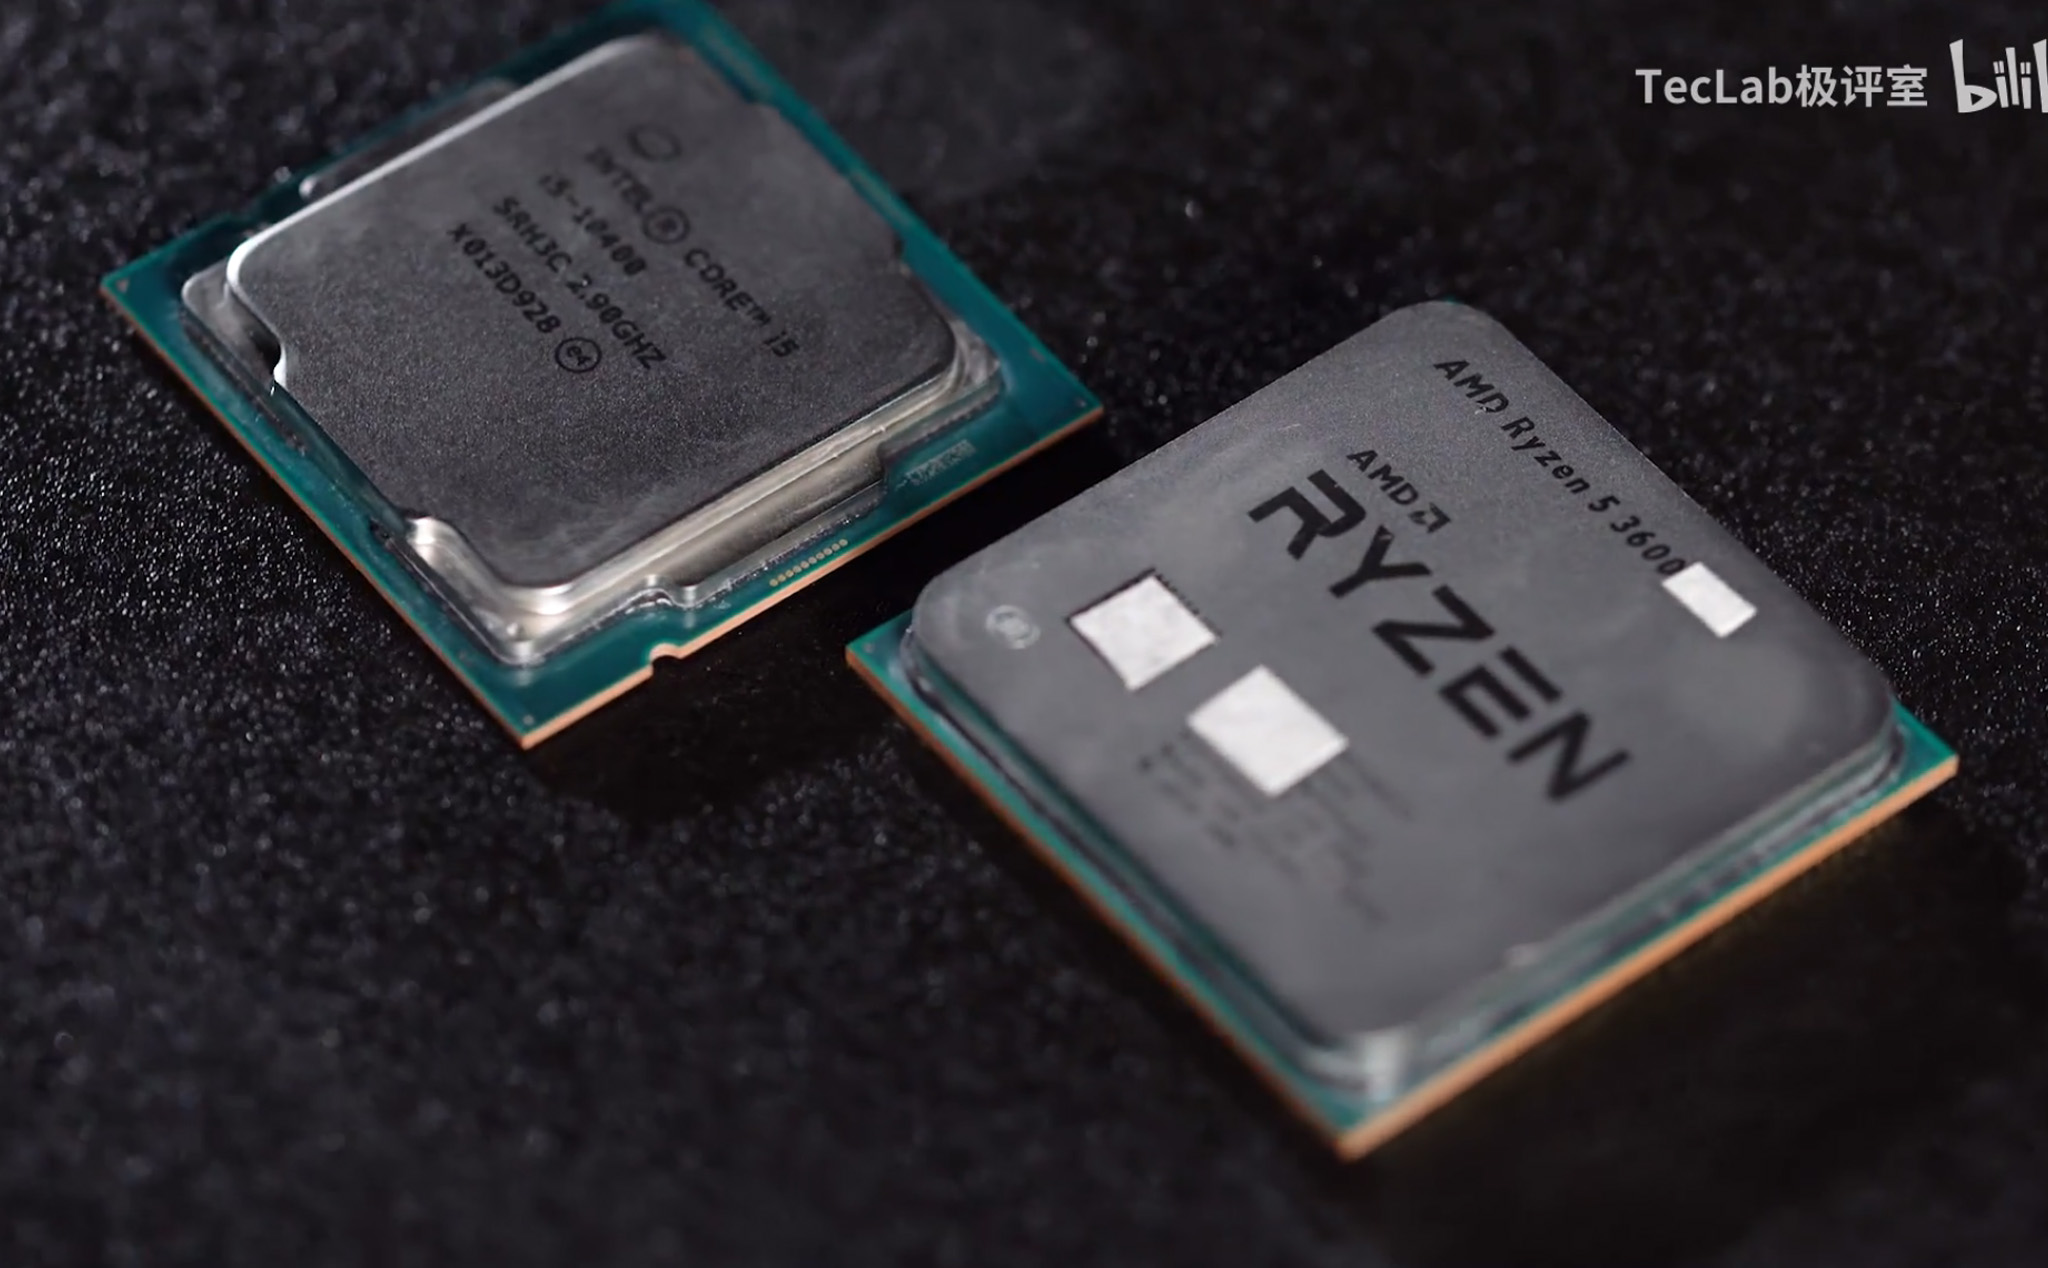 Lộ benchmark chơi game AMD Ryzen 5 3600 XT: Hiệu năng ngang ngửa nhưng đắt hơn Core i5-10400